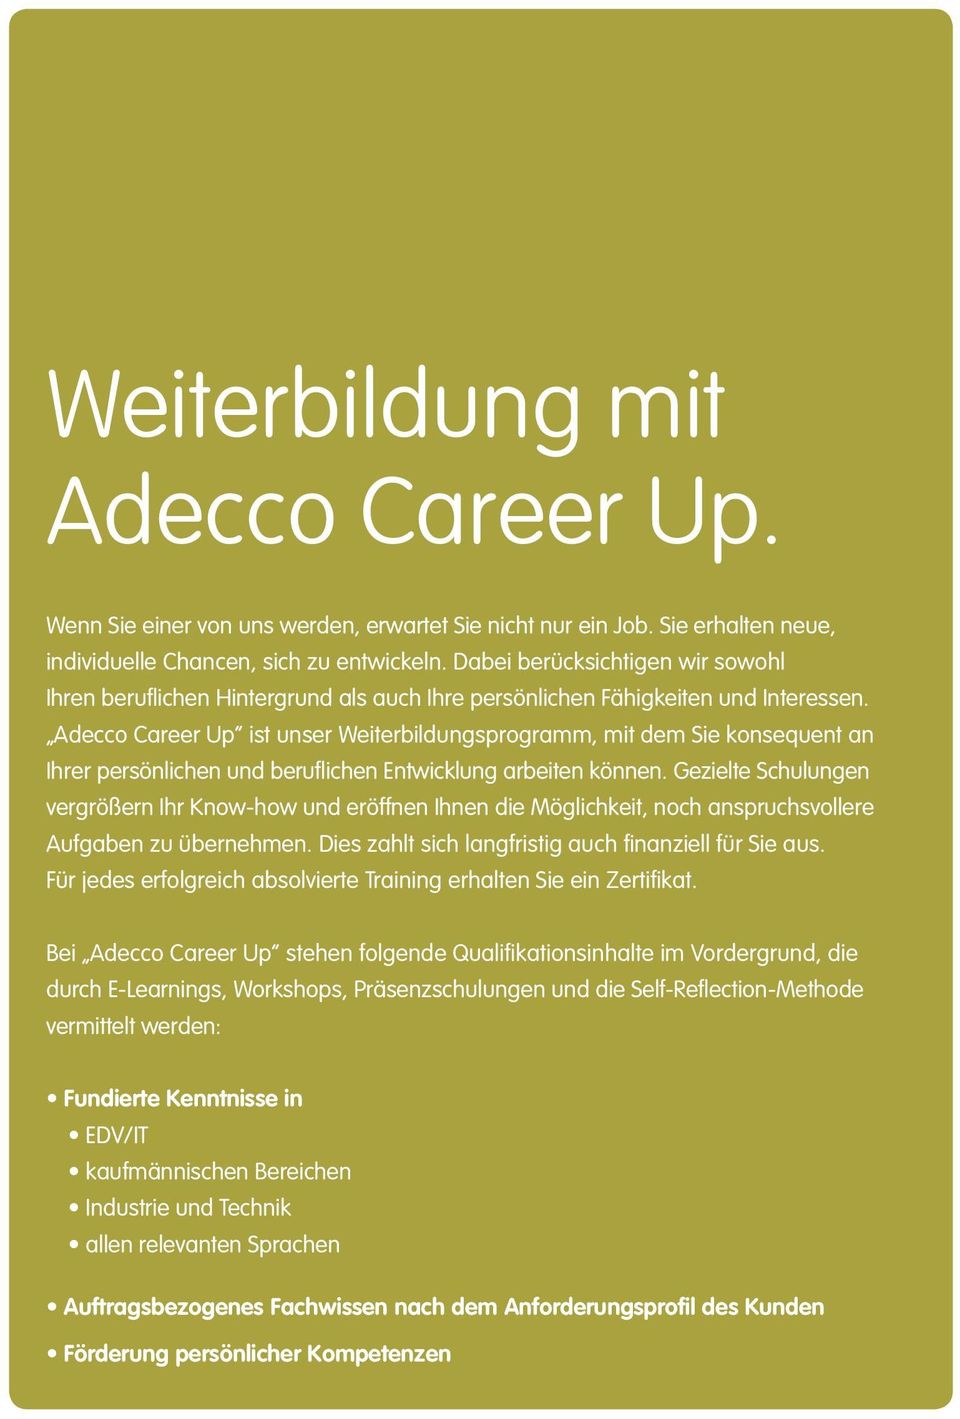 Adecco Career Up ist unser Weiterbildungsprogramm, mit dem Sie konsequent an Ihrer persönlichen und berufl ichen Entwicklung arbeiten können.